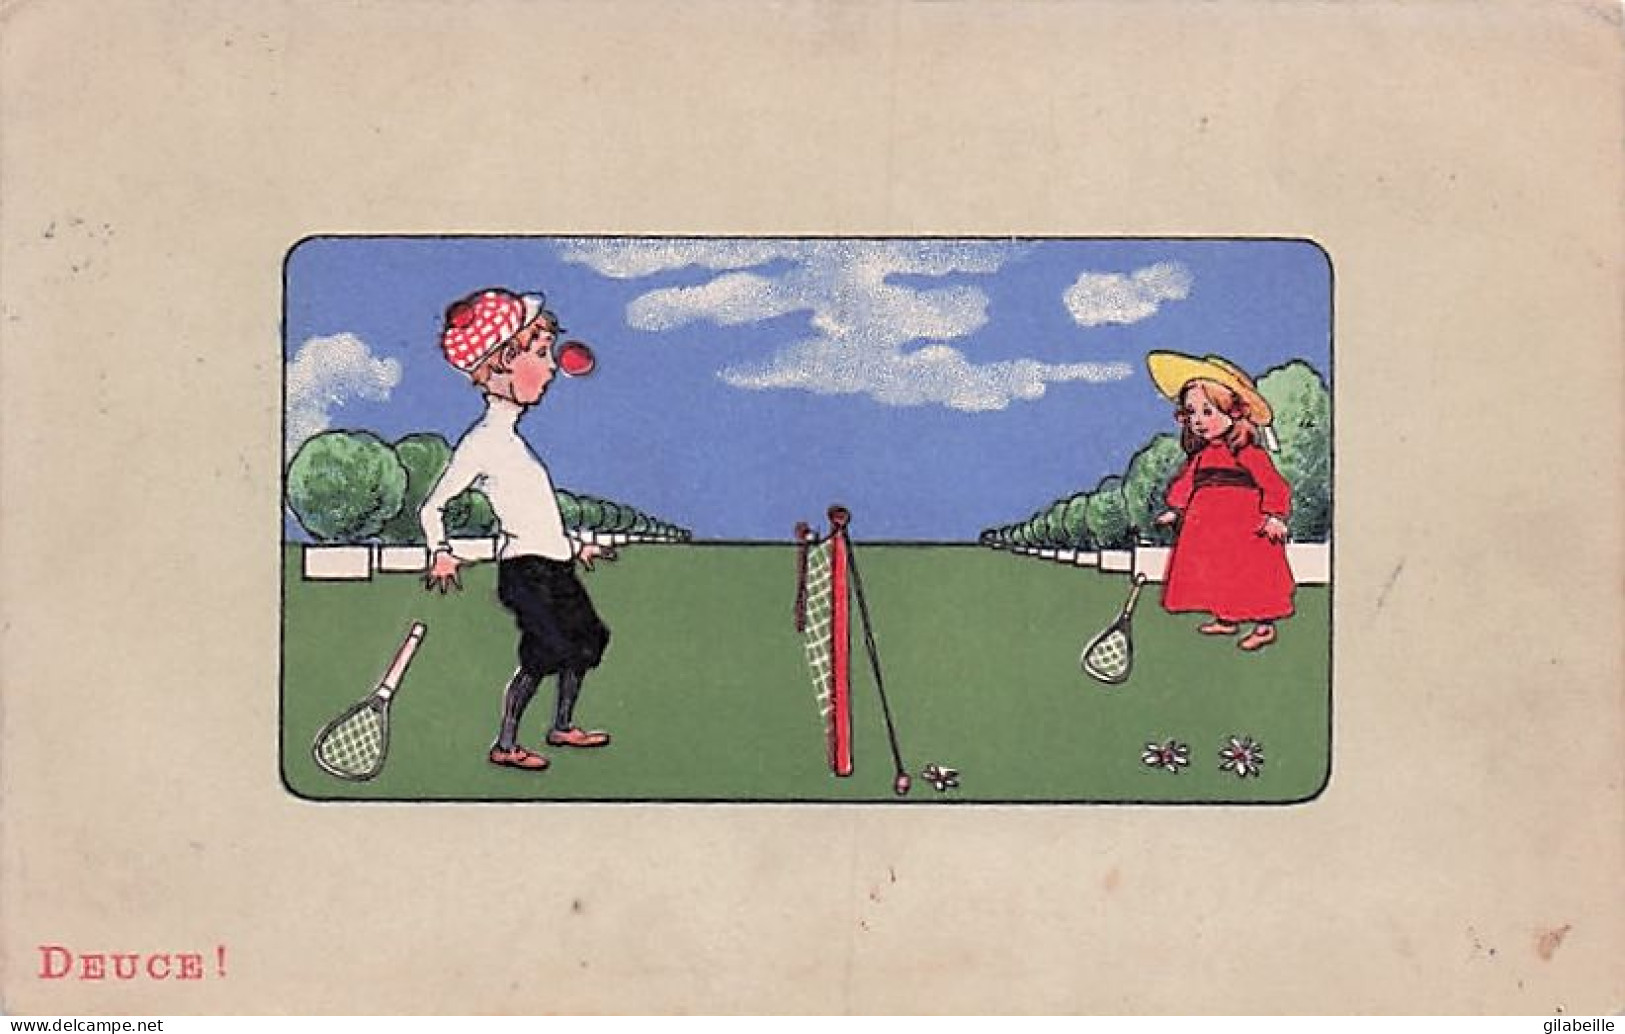  TENNIS - Illustrateur  - Enfants Jouant Au Tennis  - Deuce -  1917 - 1900-1949